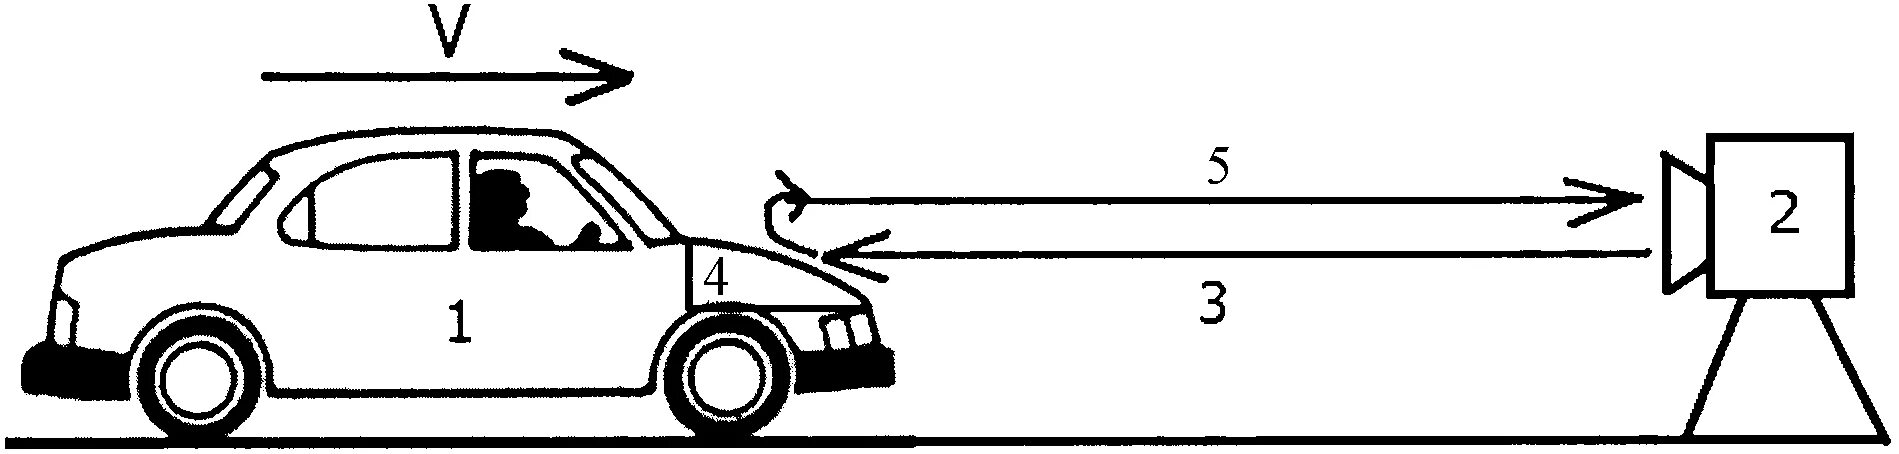 Схема скоростей в автомобиле. Скорость рисунок. Устройство для определения скорости автомобиля. Скорость движения автомобиля.